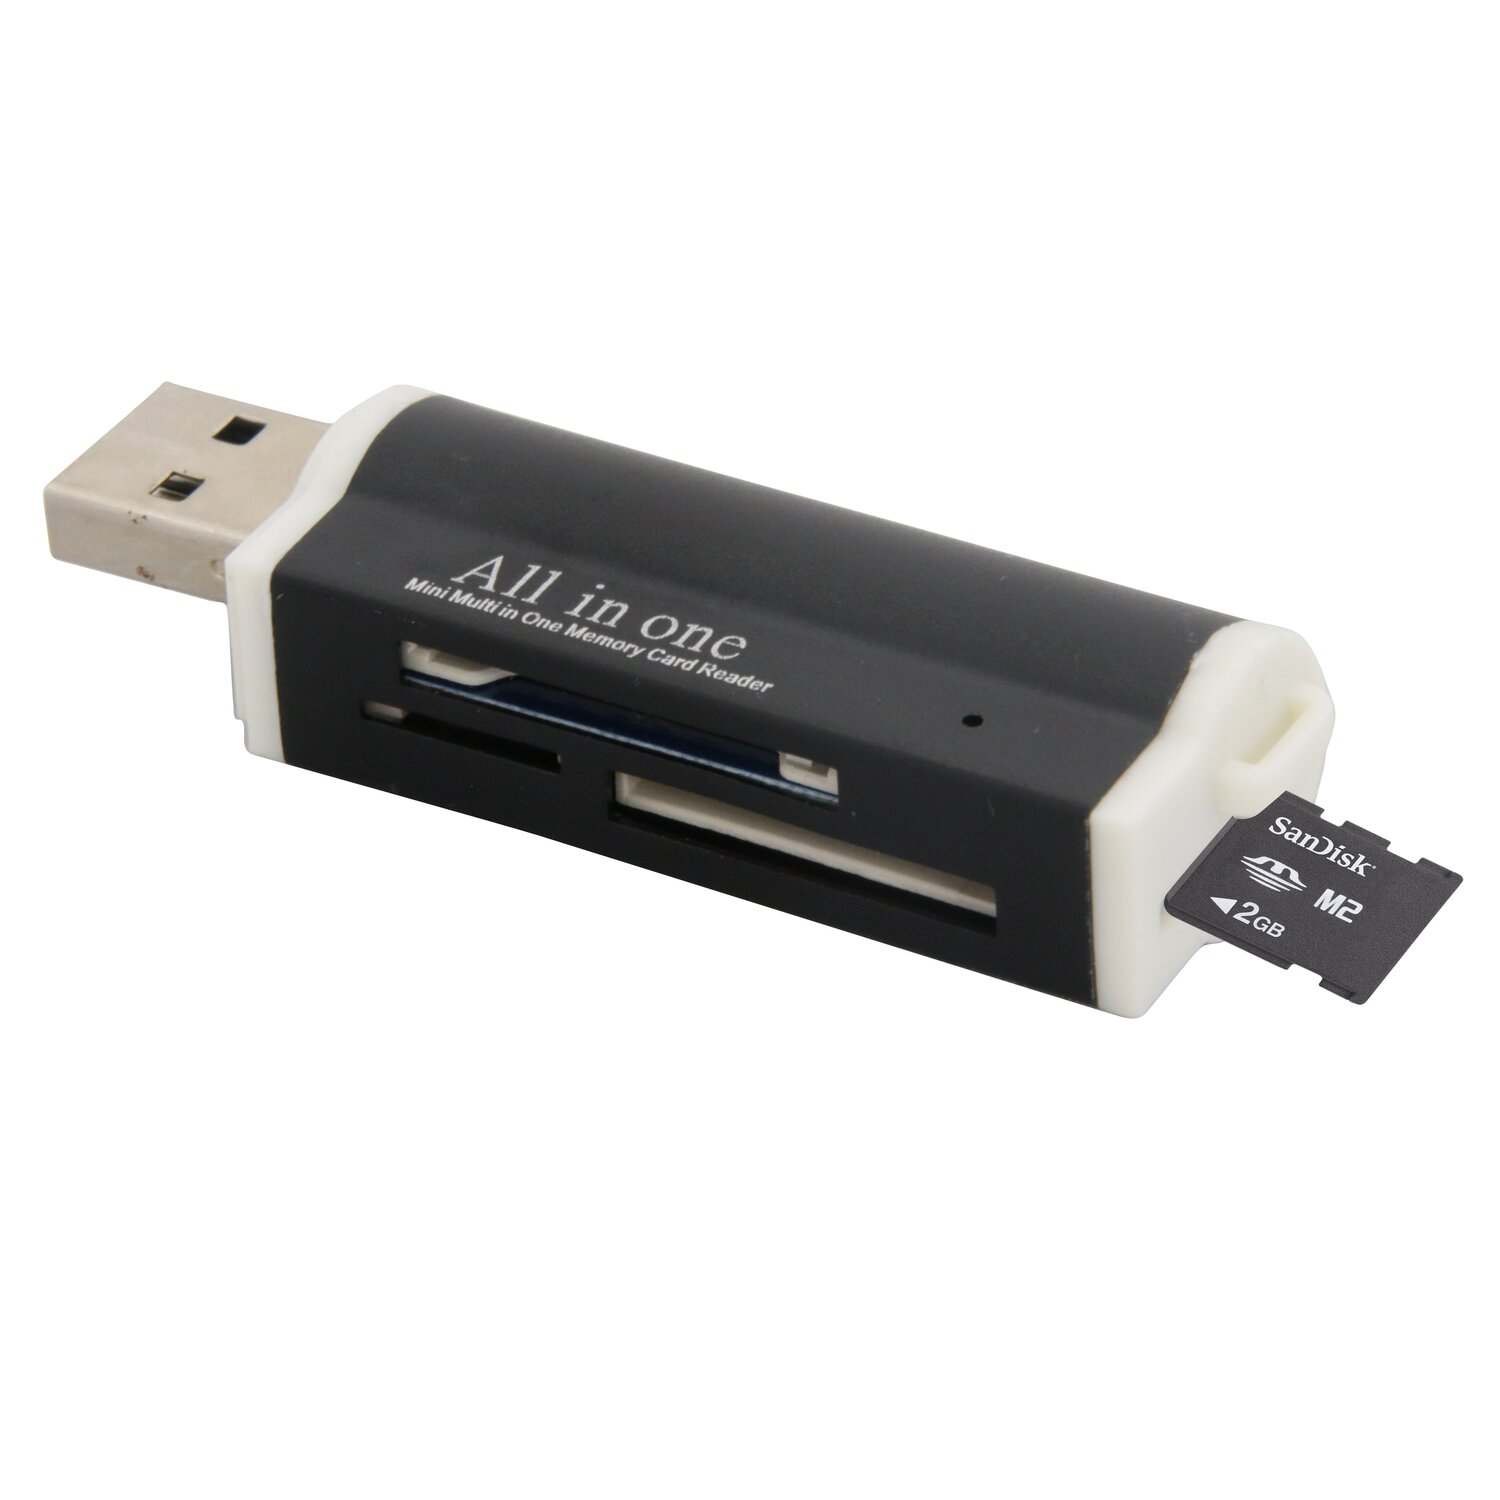 COFI All in Kartenleser USB One